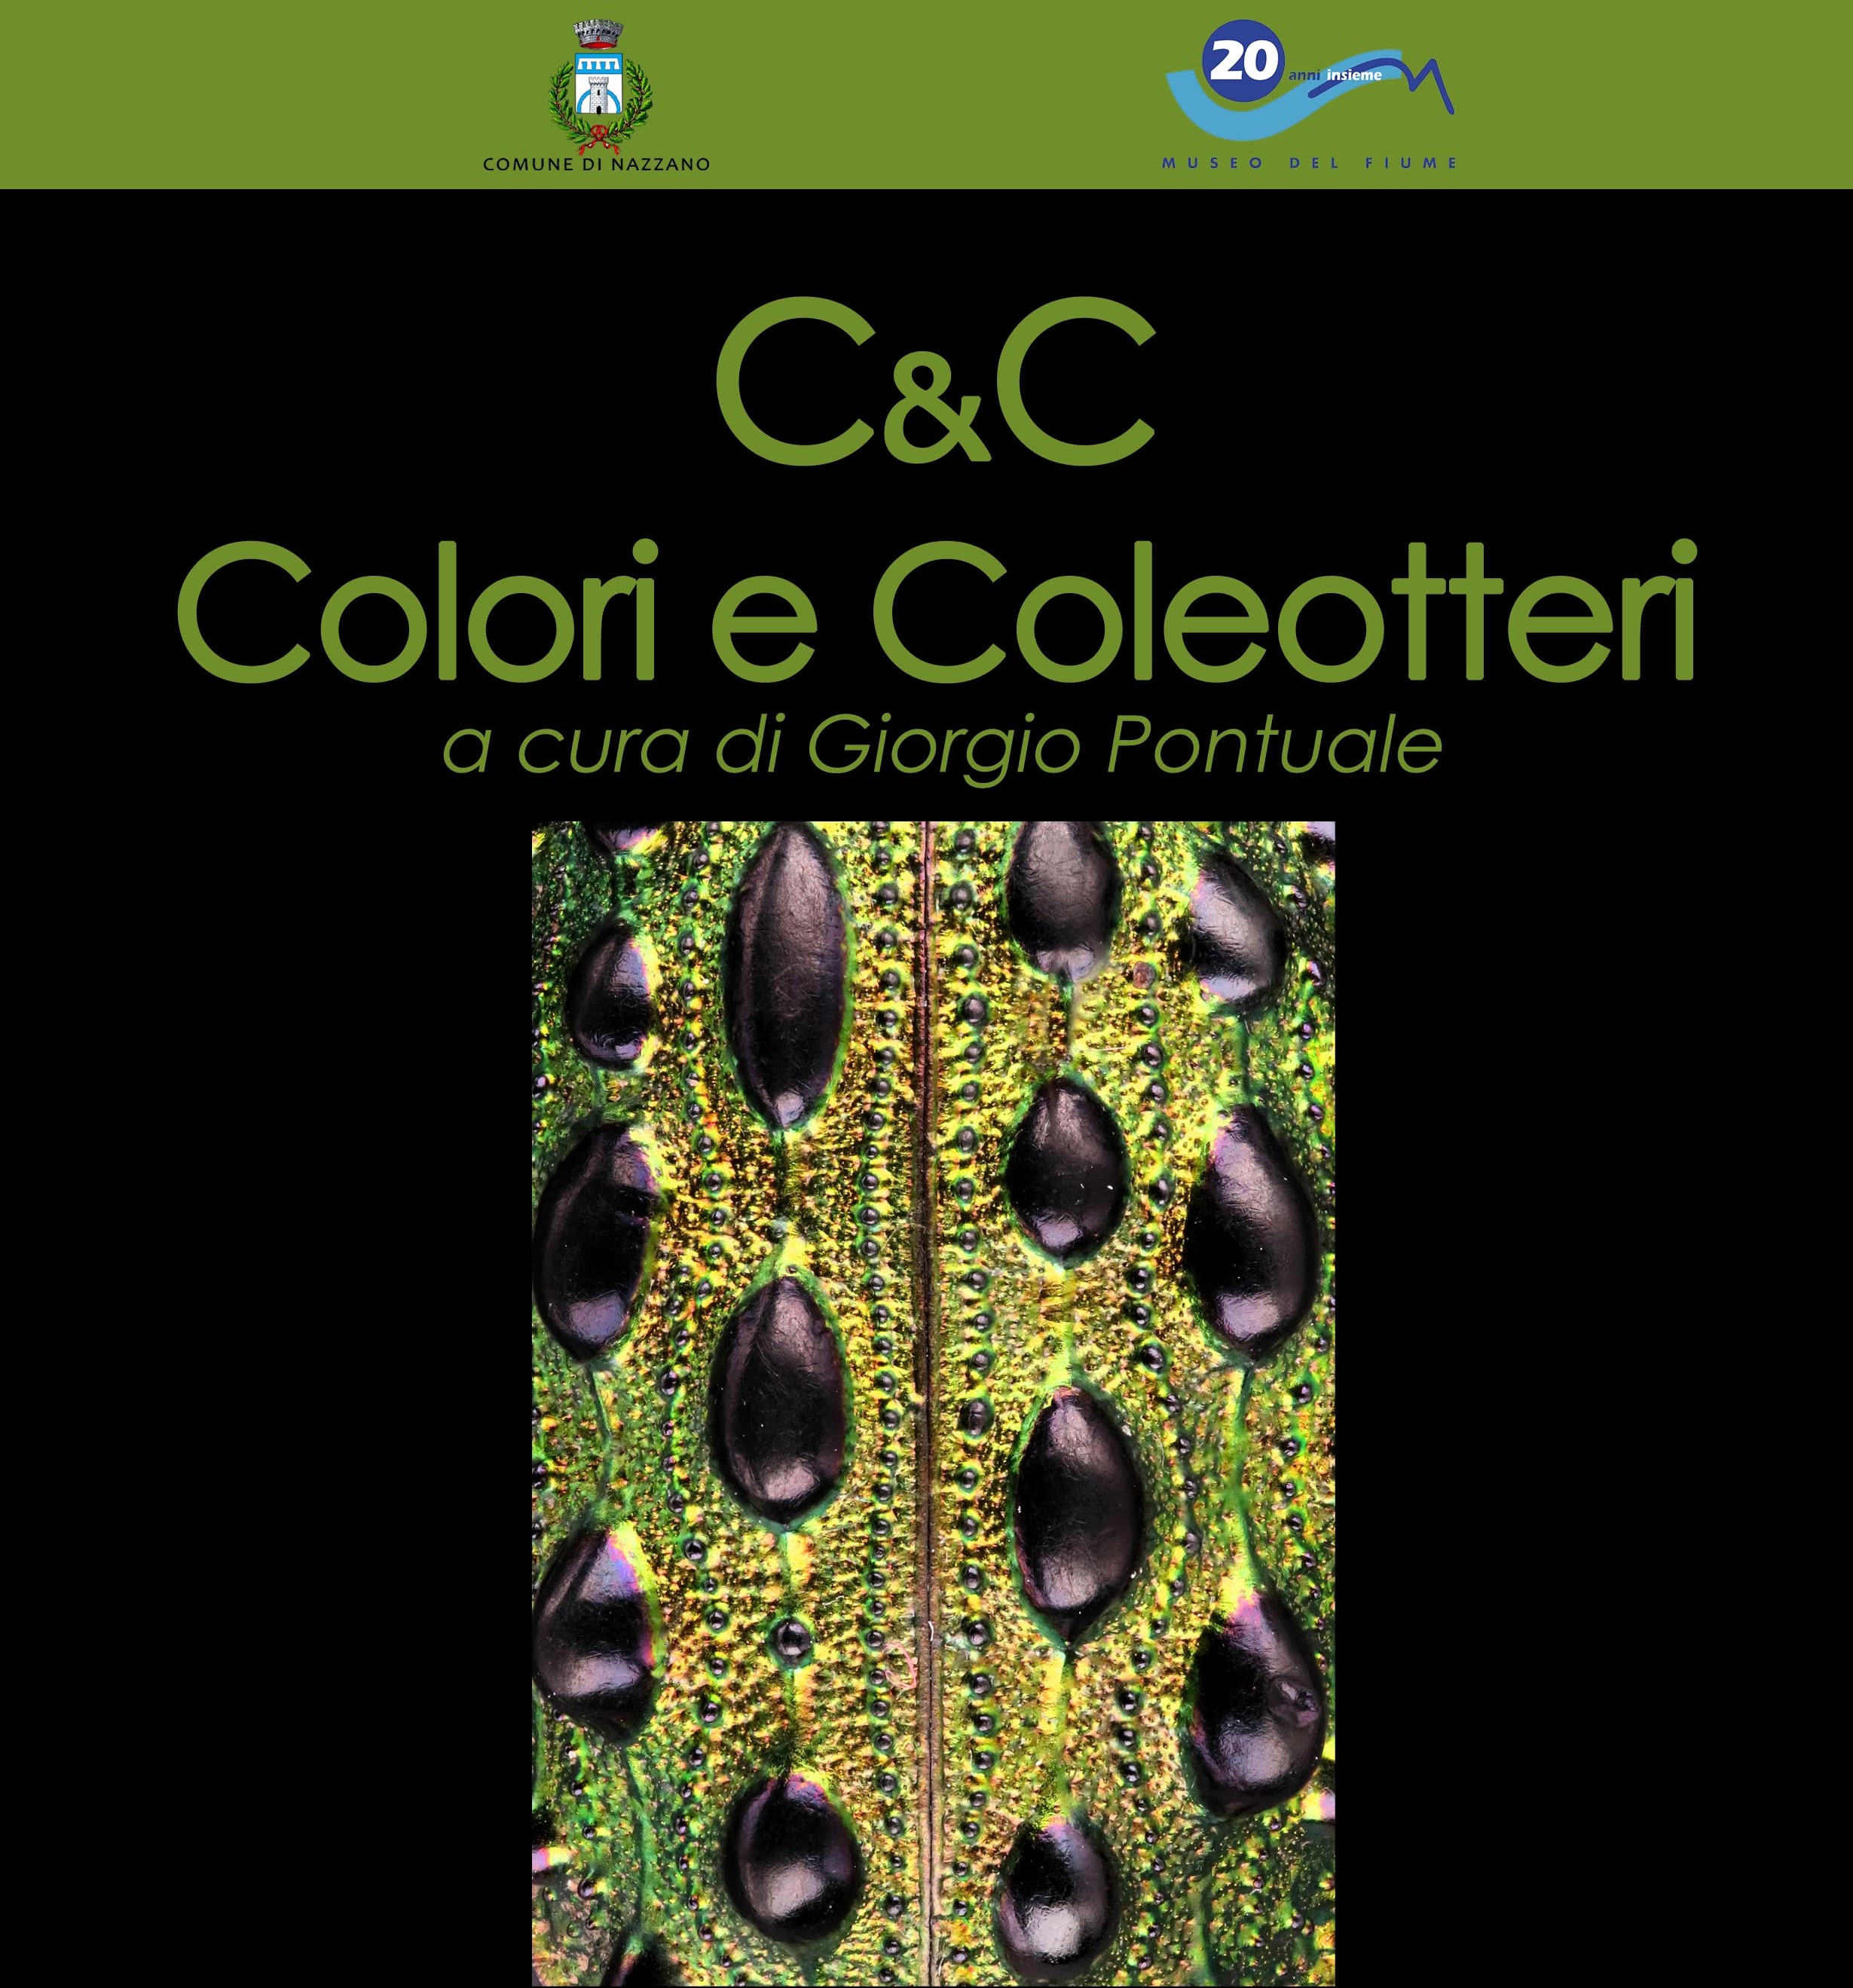 Mostra C&C Colori e Coleotteri